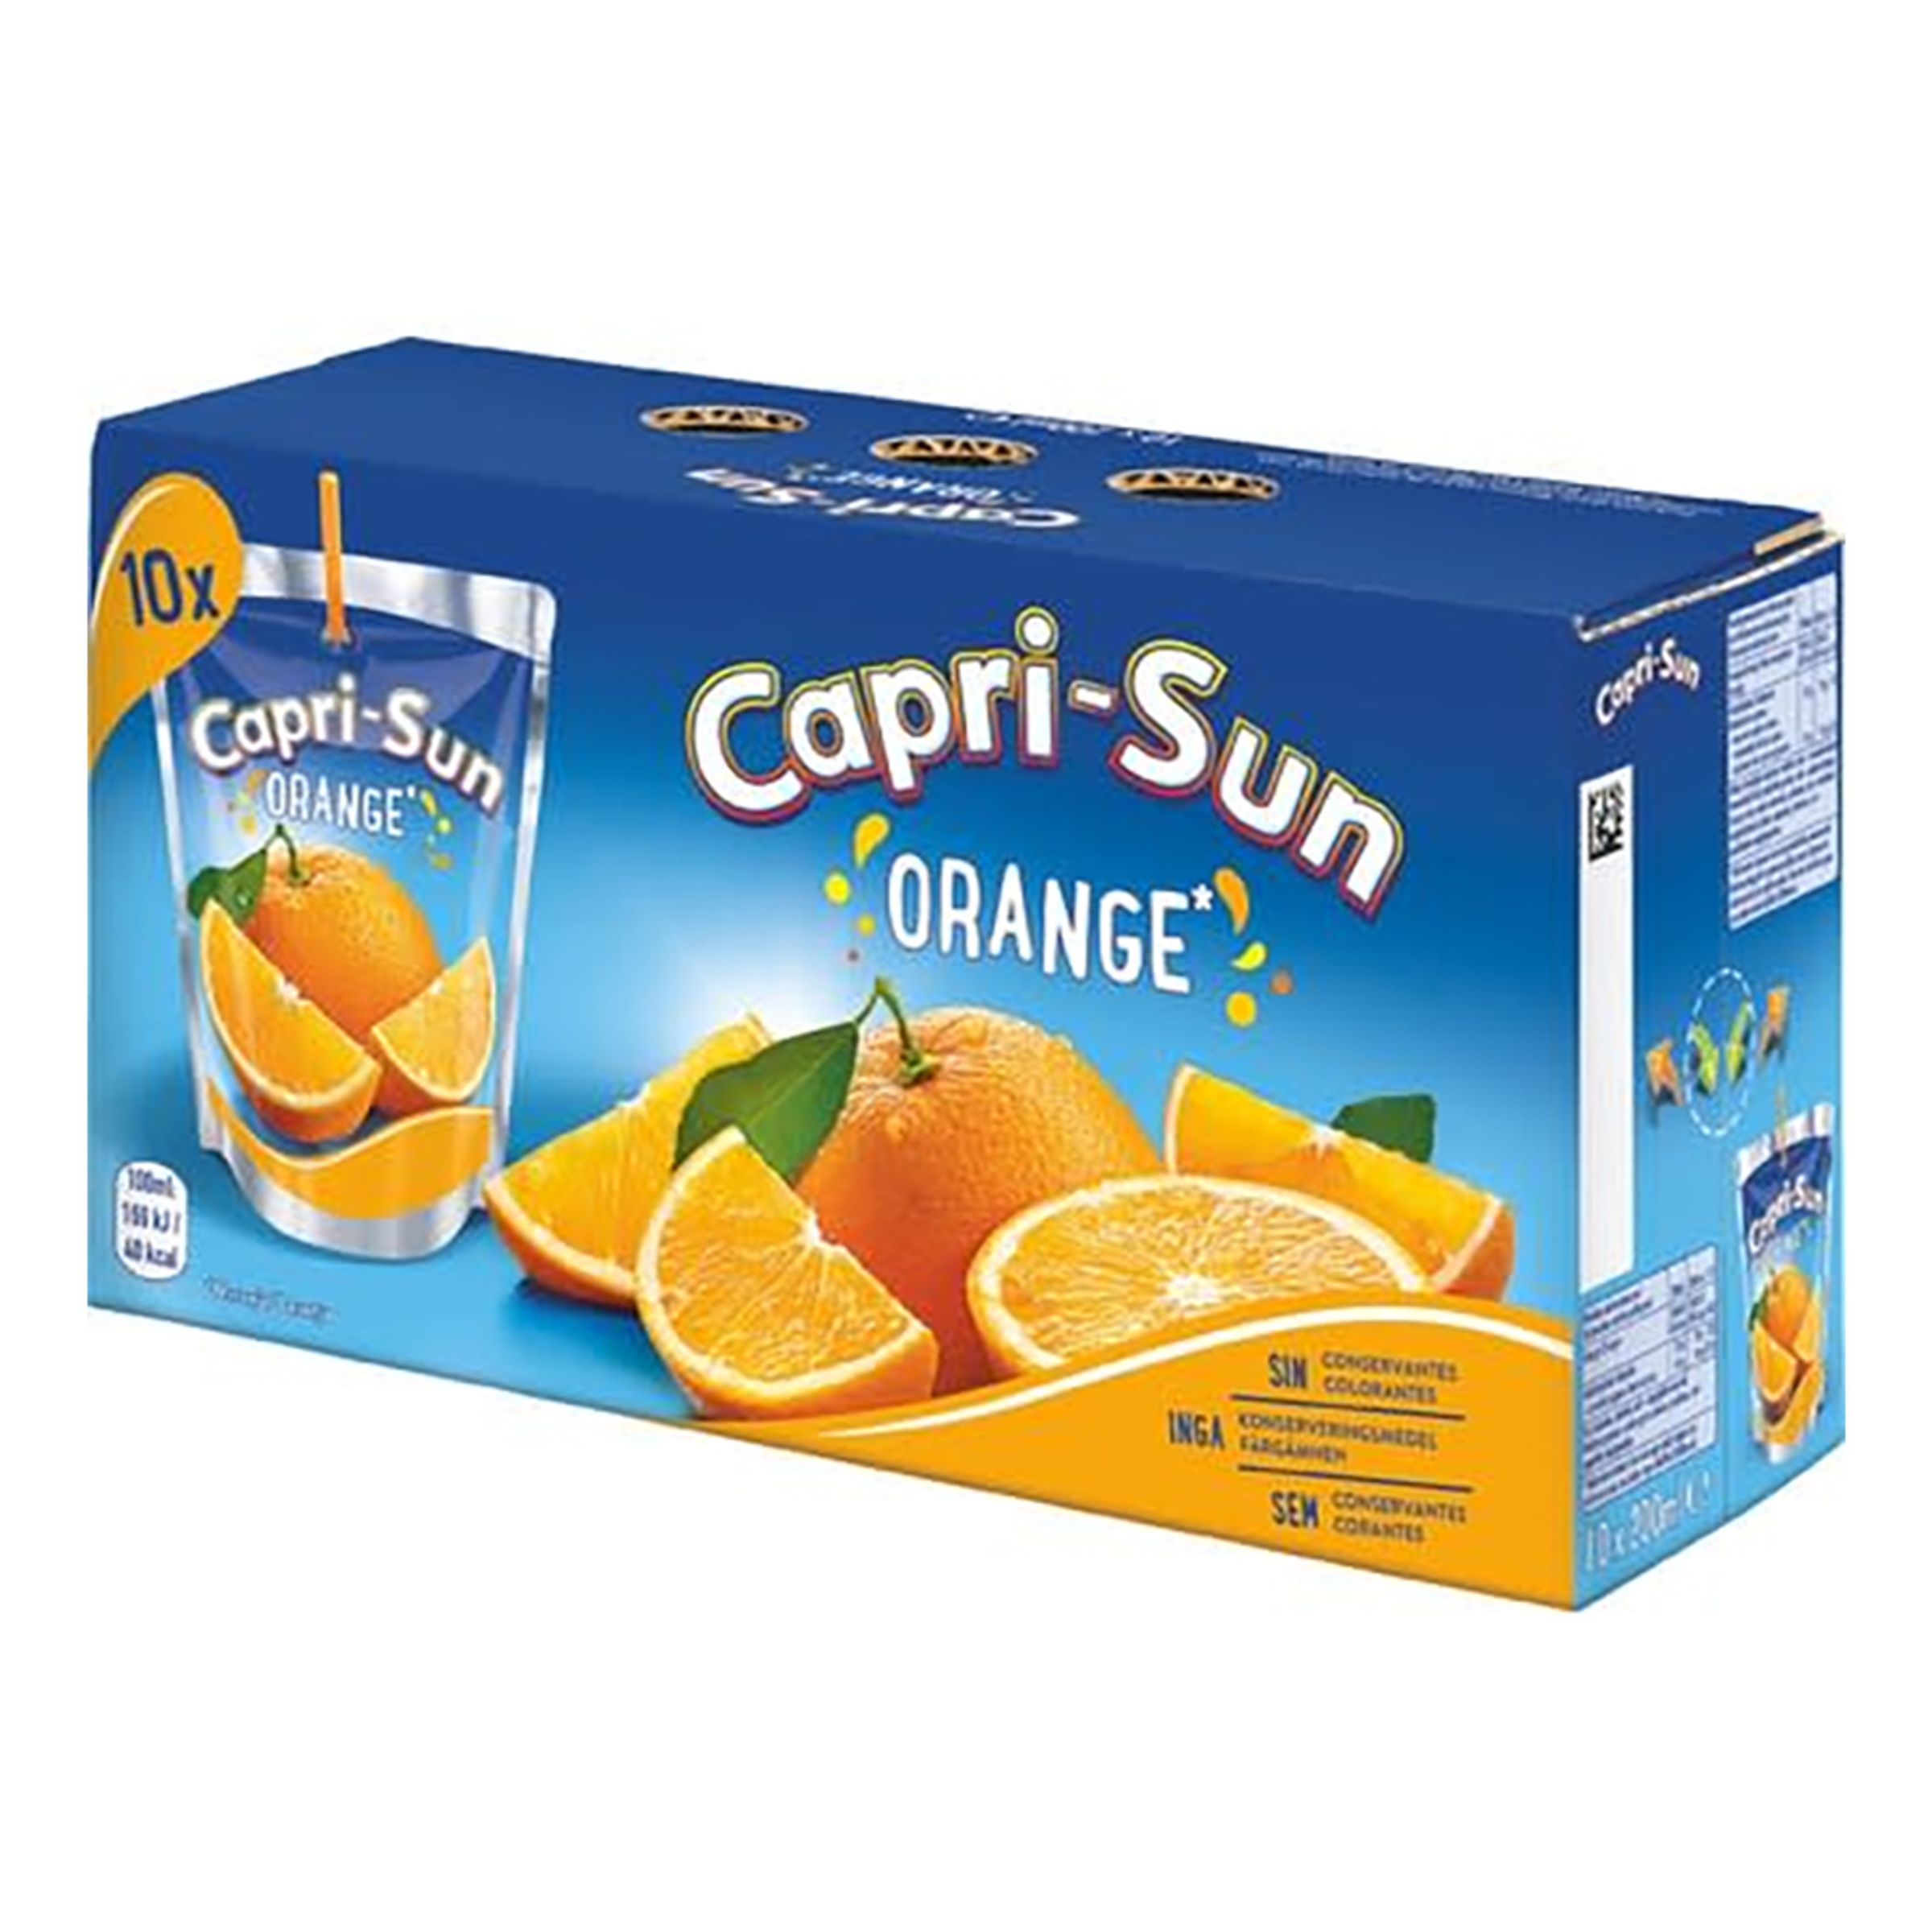 Capri-Sun Orange - 10-pack